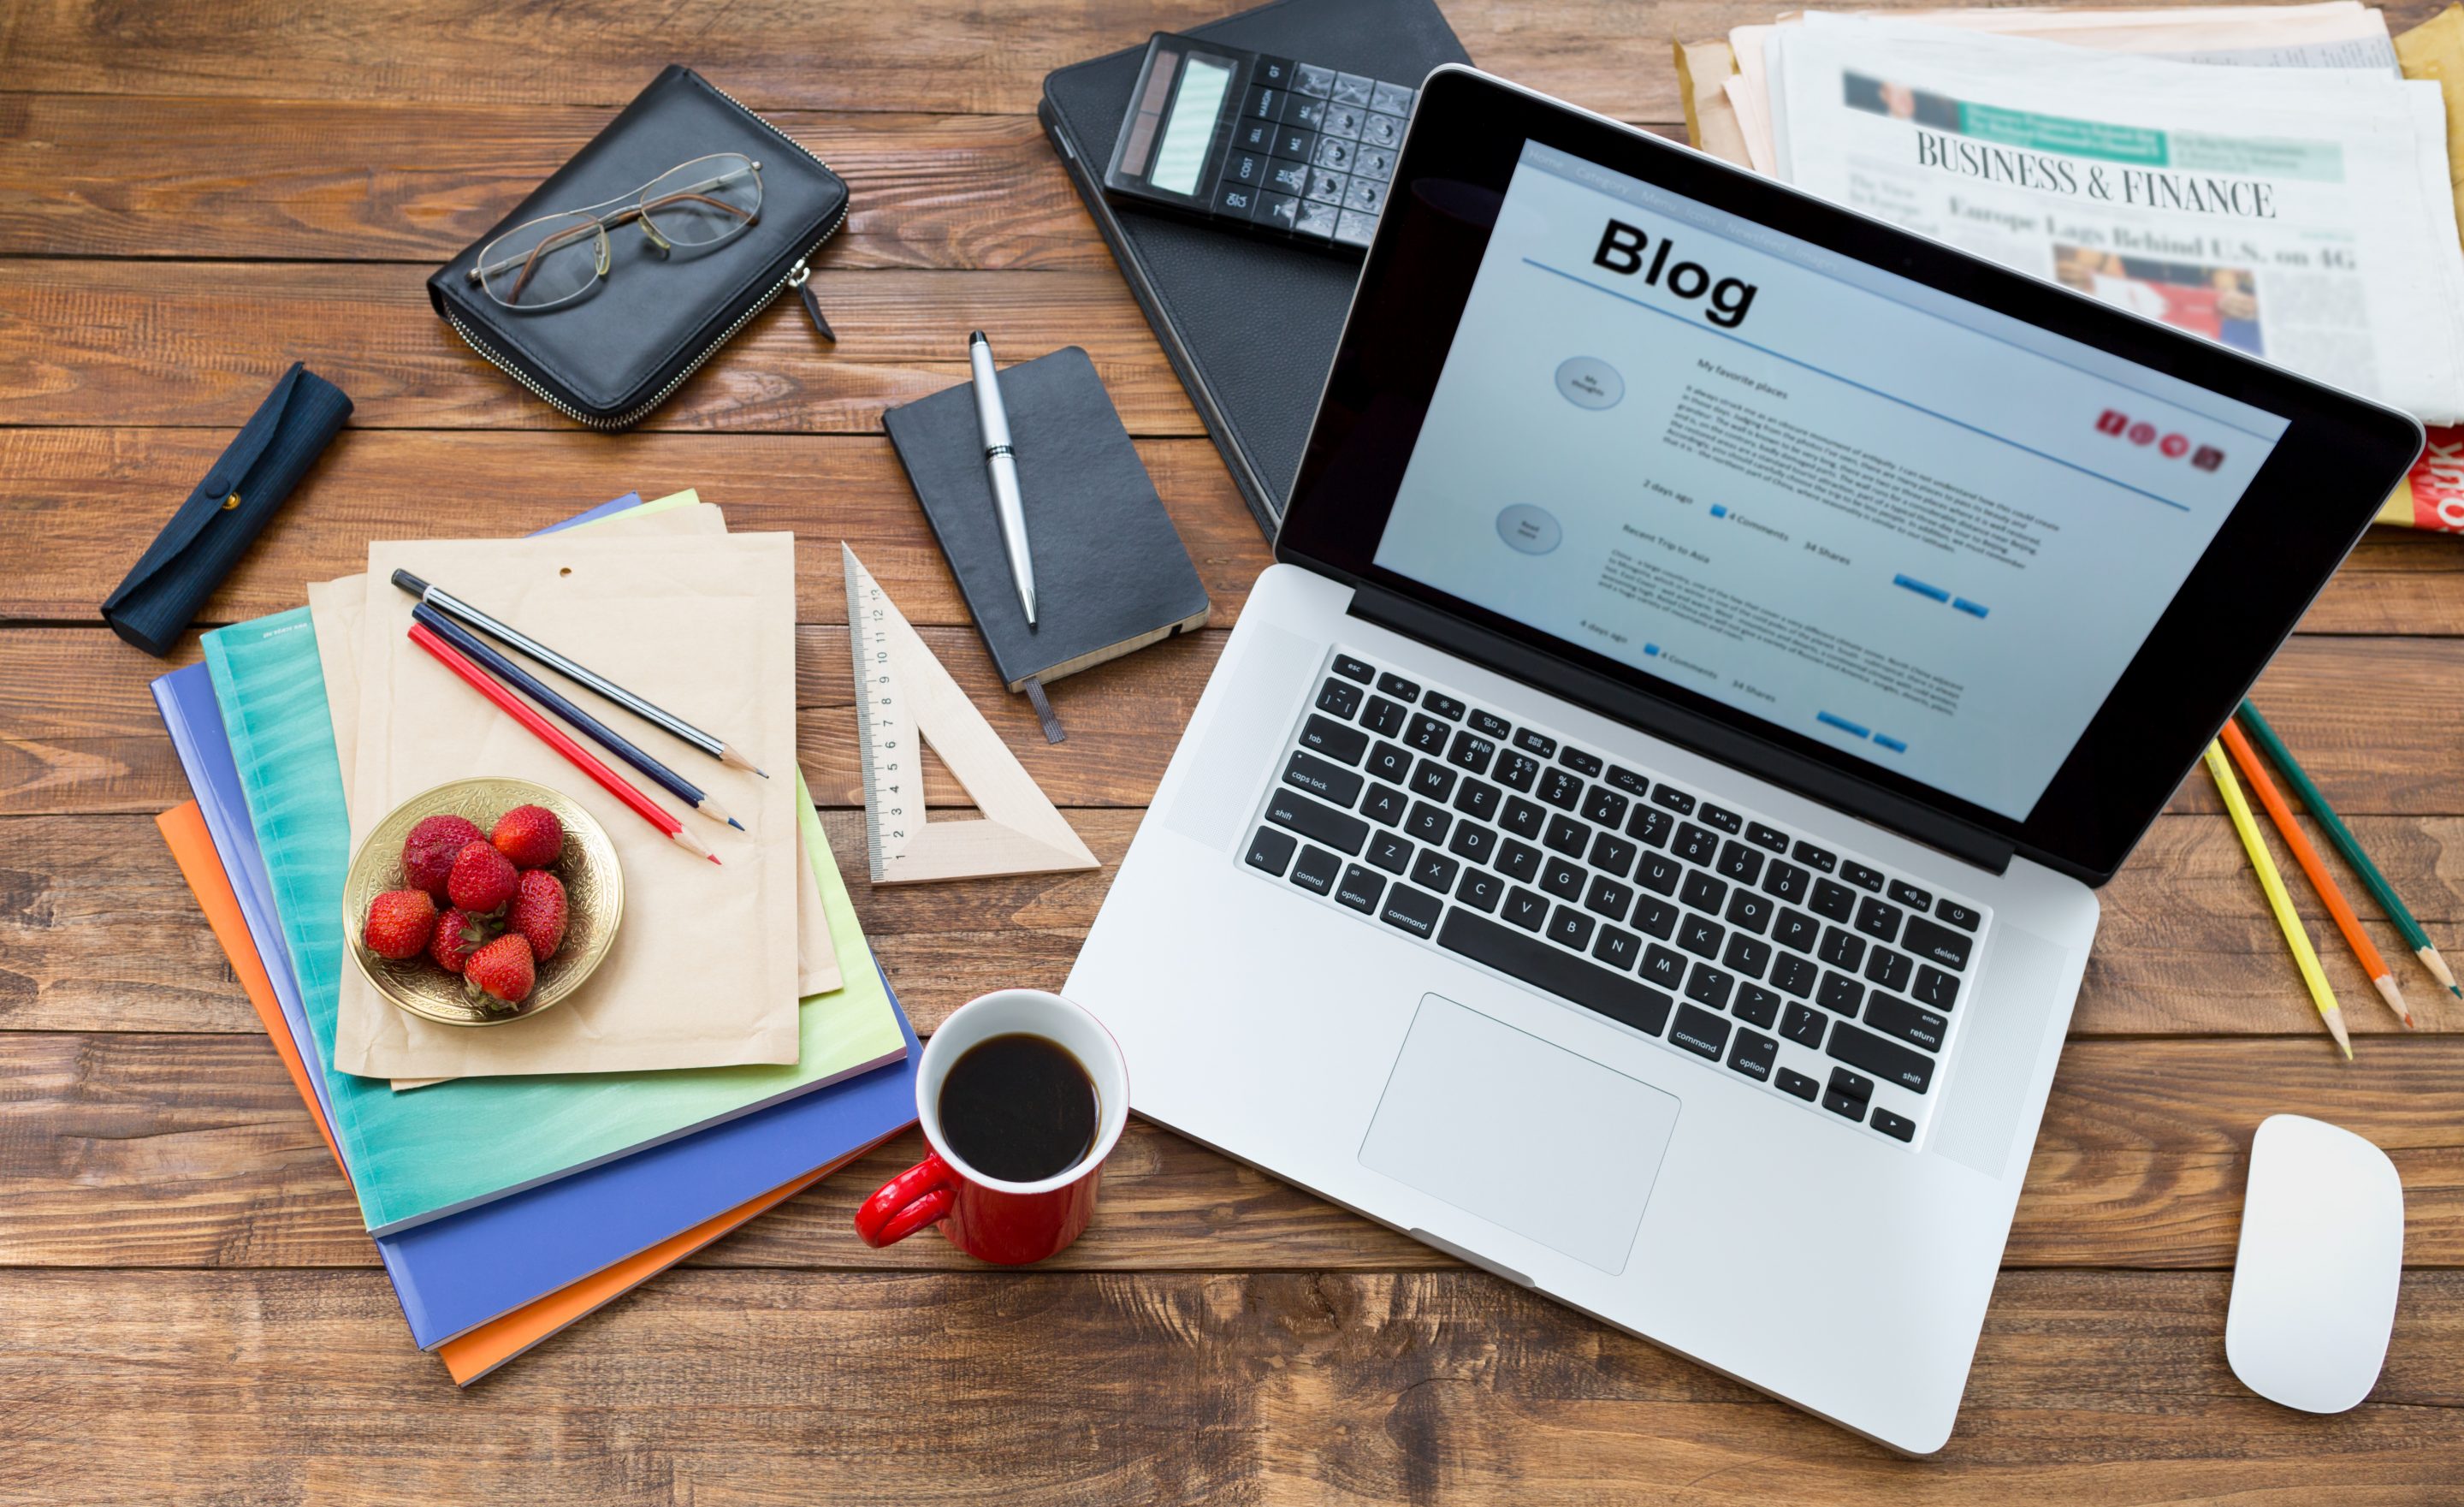 Hai una startup? Devi creare un blog aziendale.